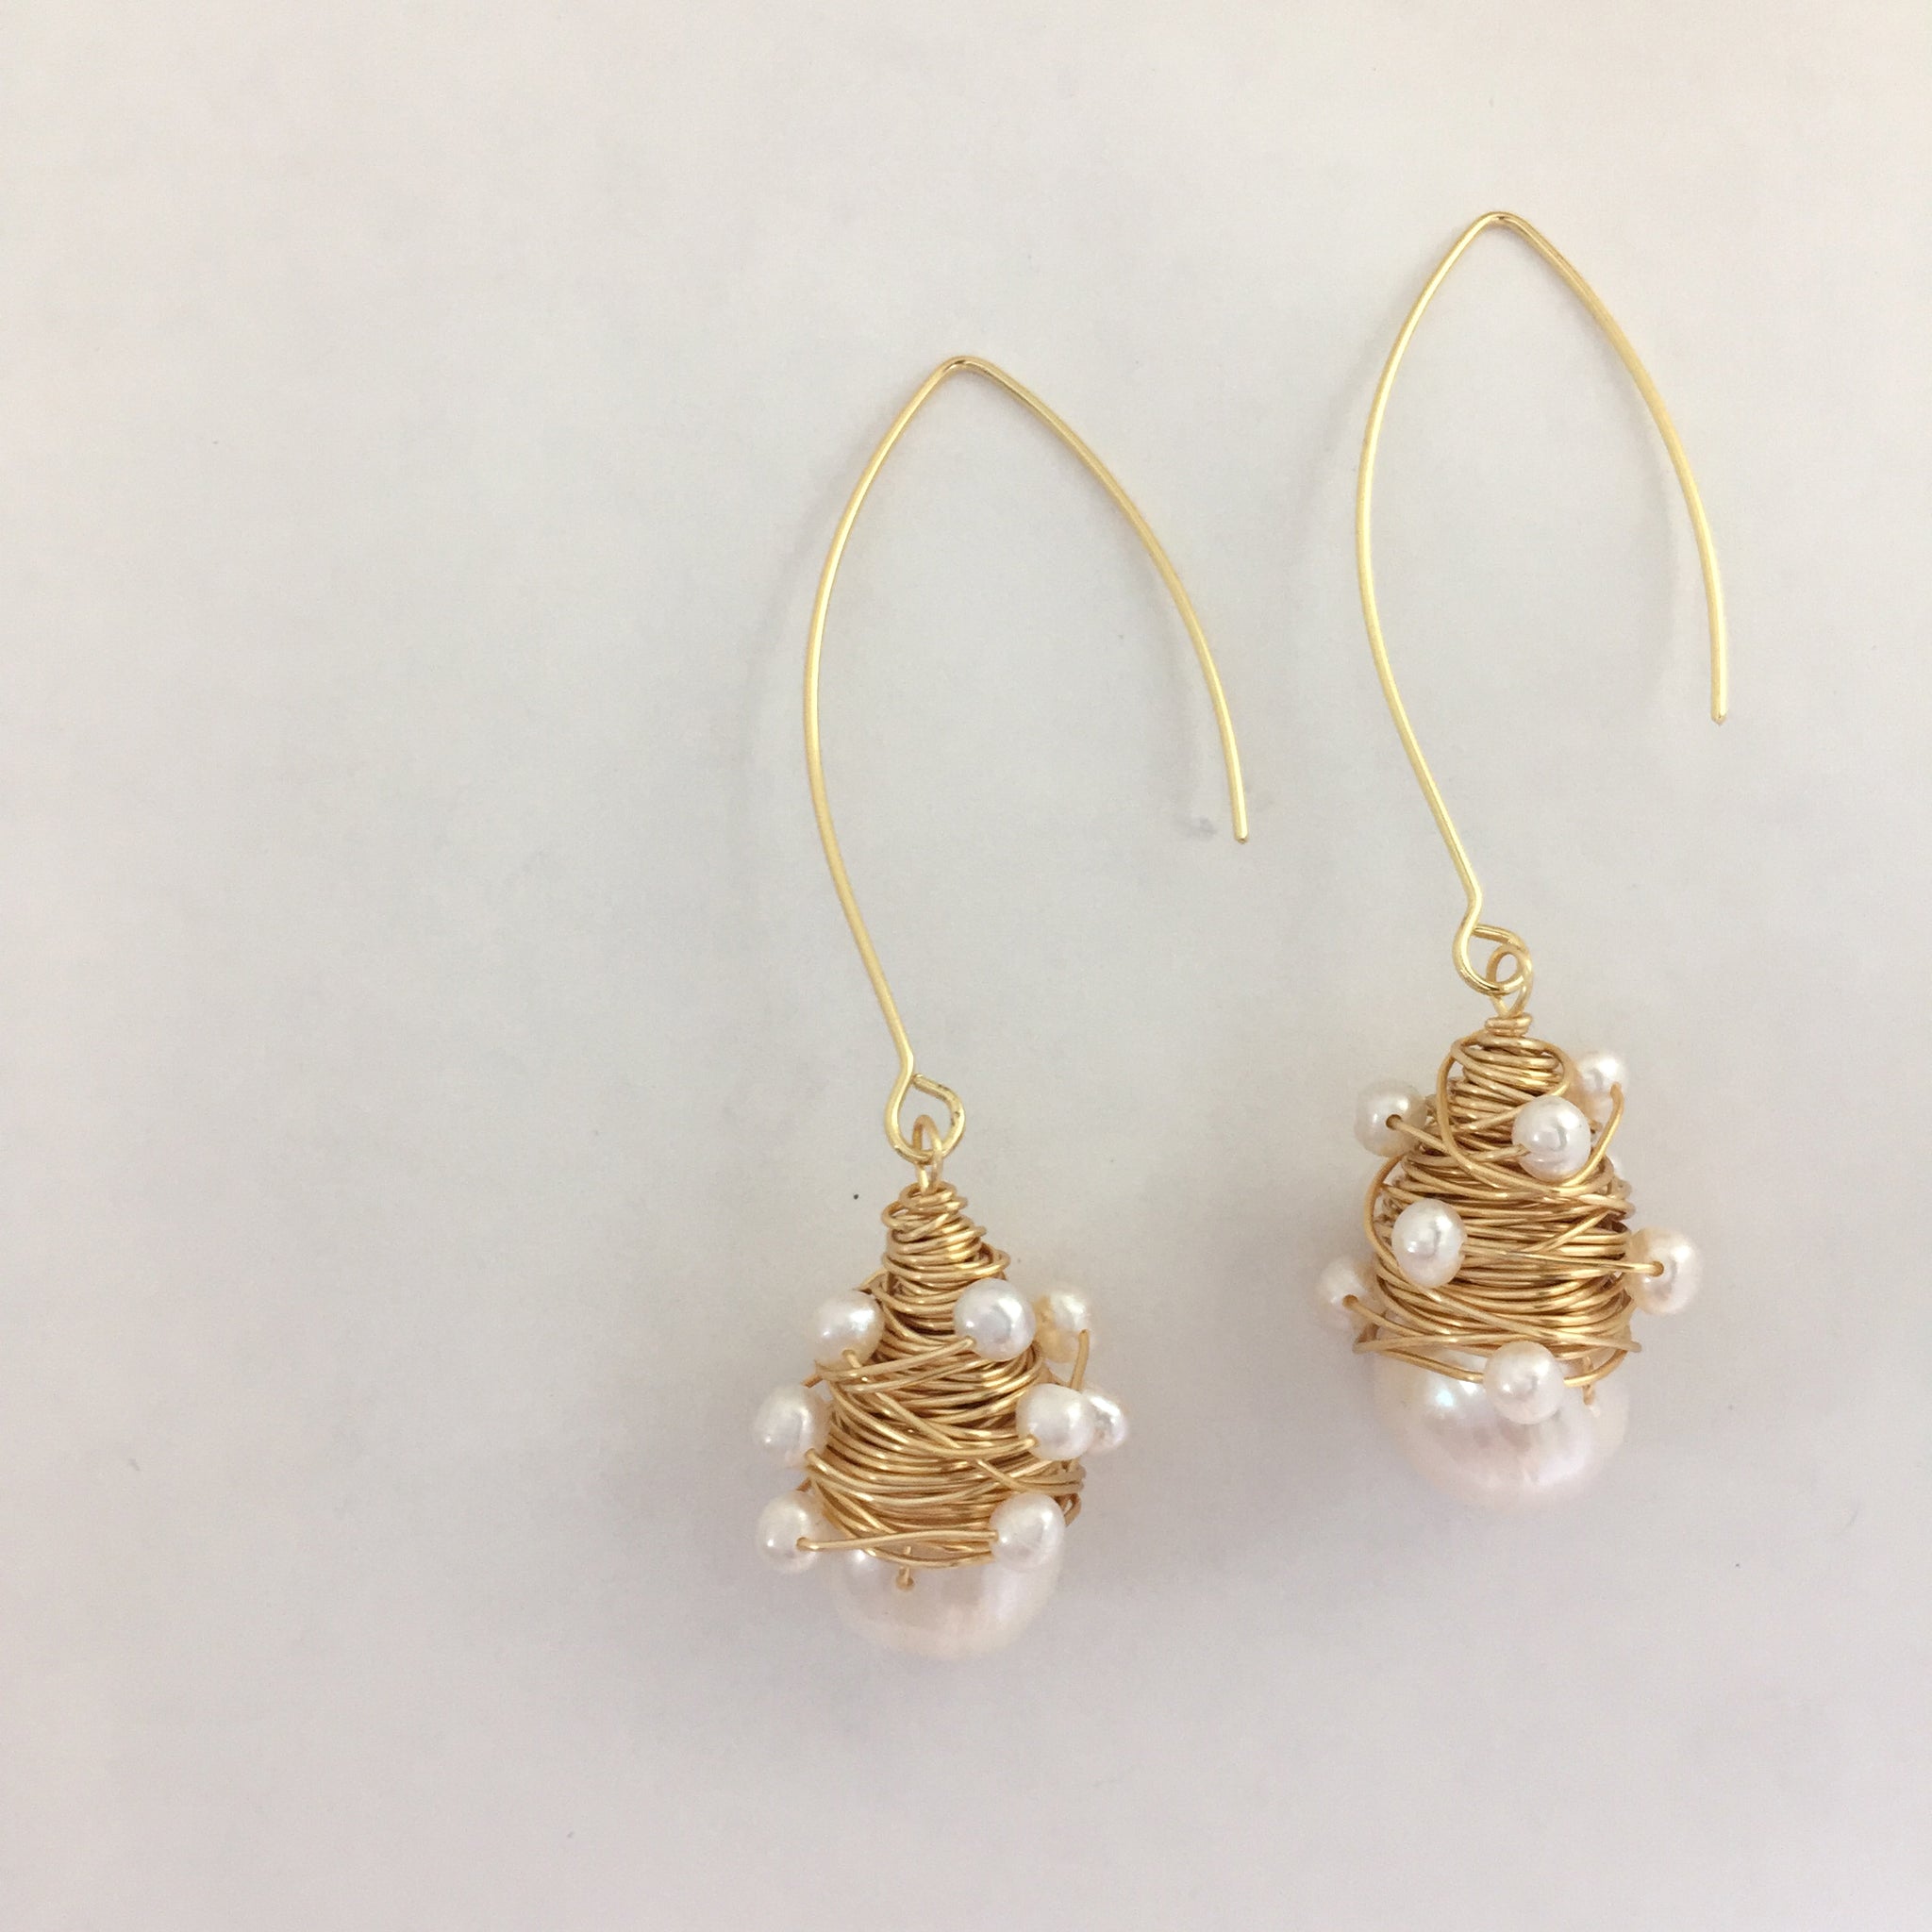 Baroque Pearl Dangle Earrings, Valentine’s Day Gift, Boho Hippie Gypsy Wedding Pearl Earrings